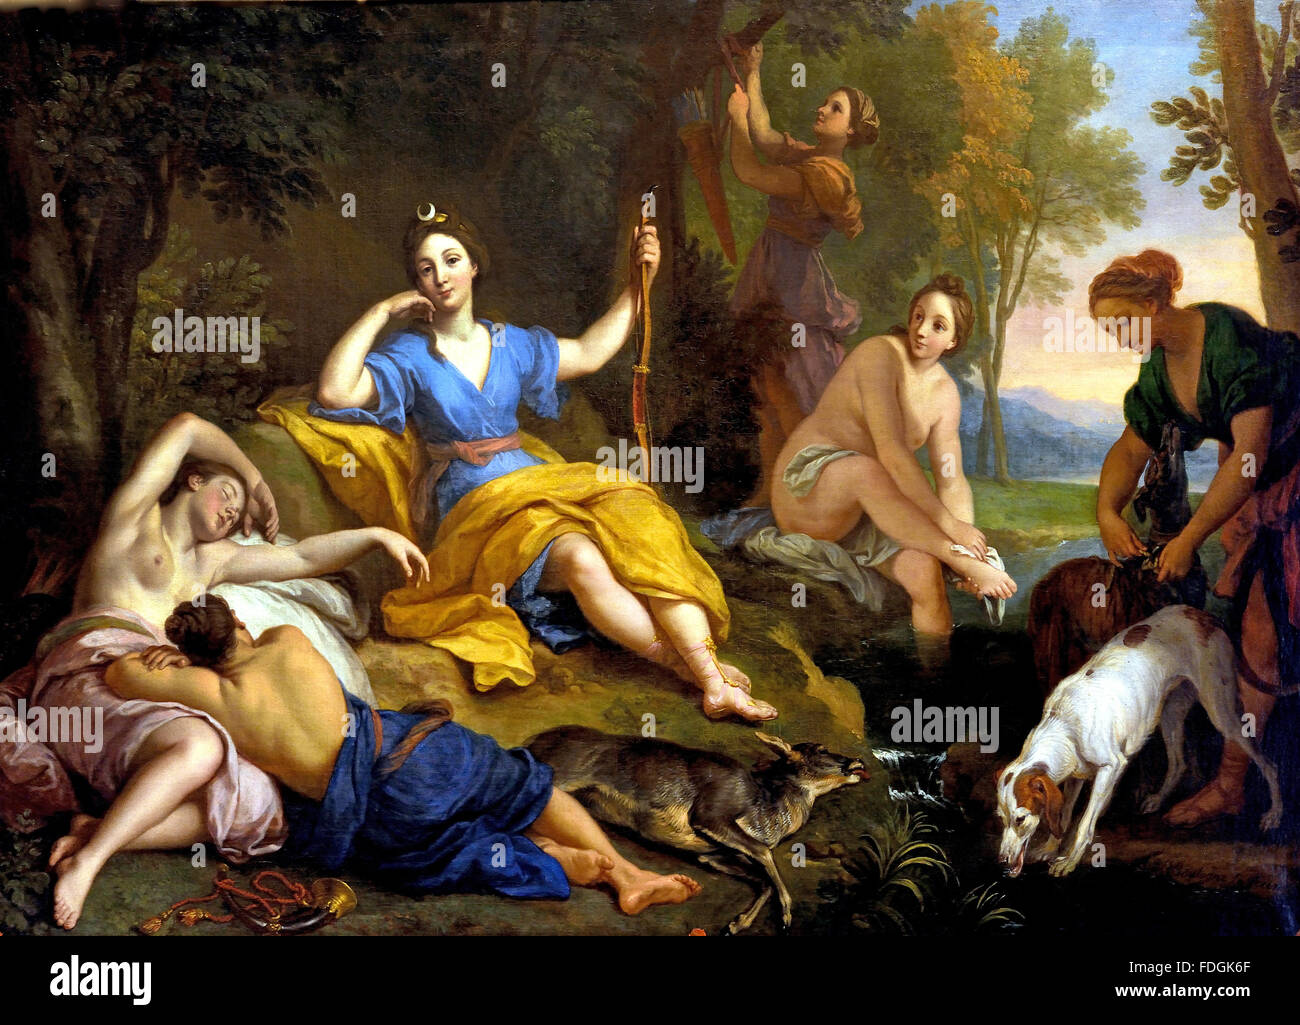 Diana y sus compañeros descansando después de la caza BOULOGNE Louis de 1654 - 1733 Francia ( la mitología romana, Diana era la diosa de la caza, la luna y el parto ) Foto de stock